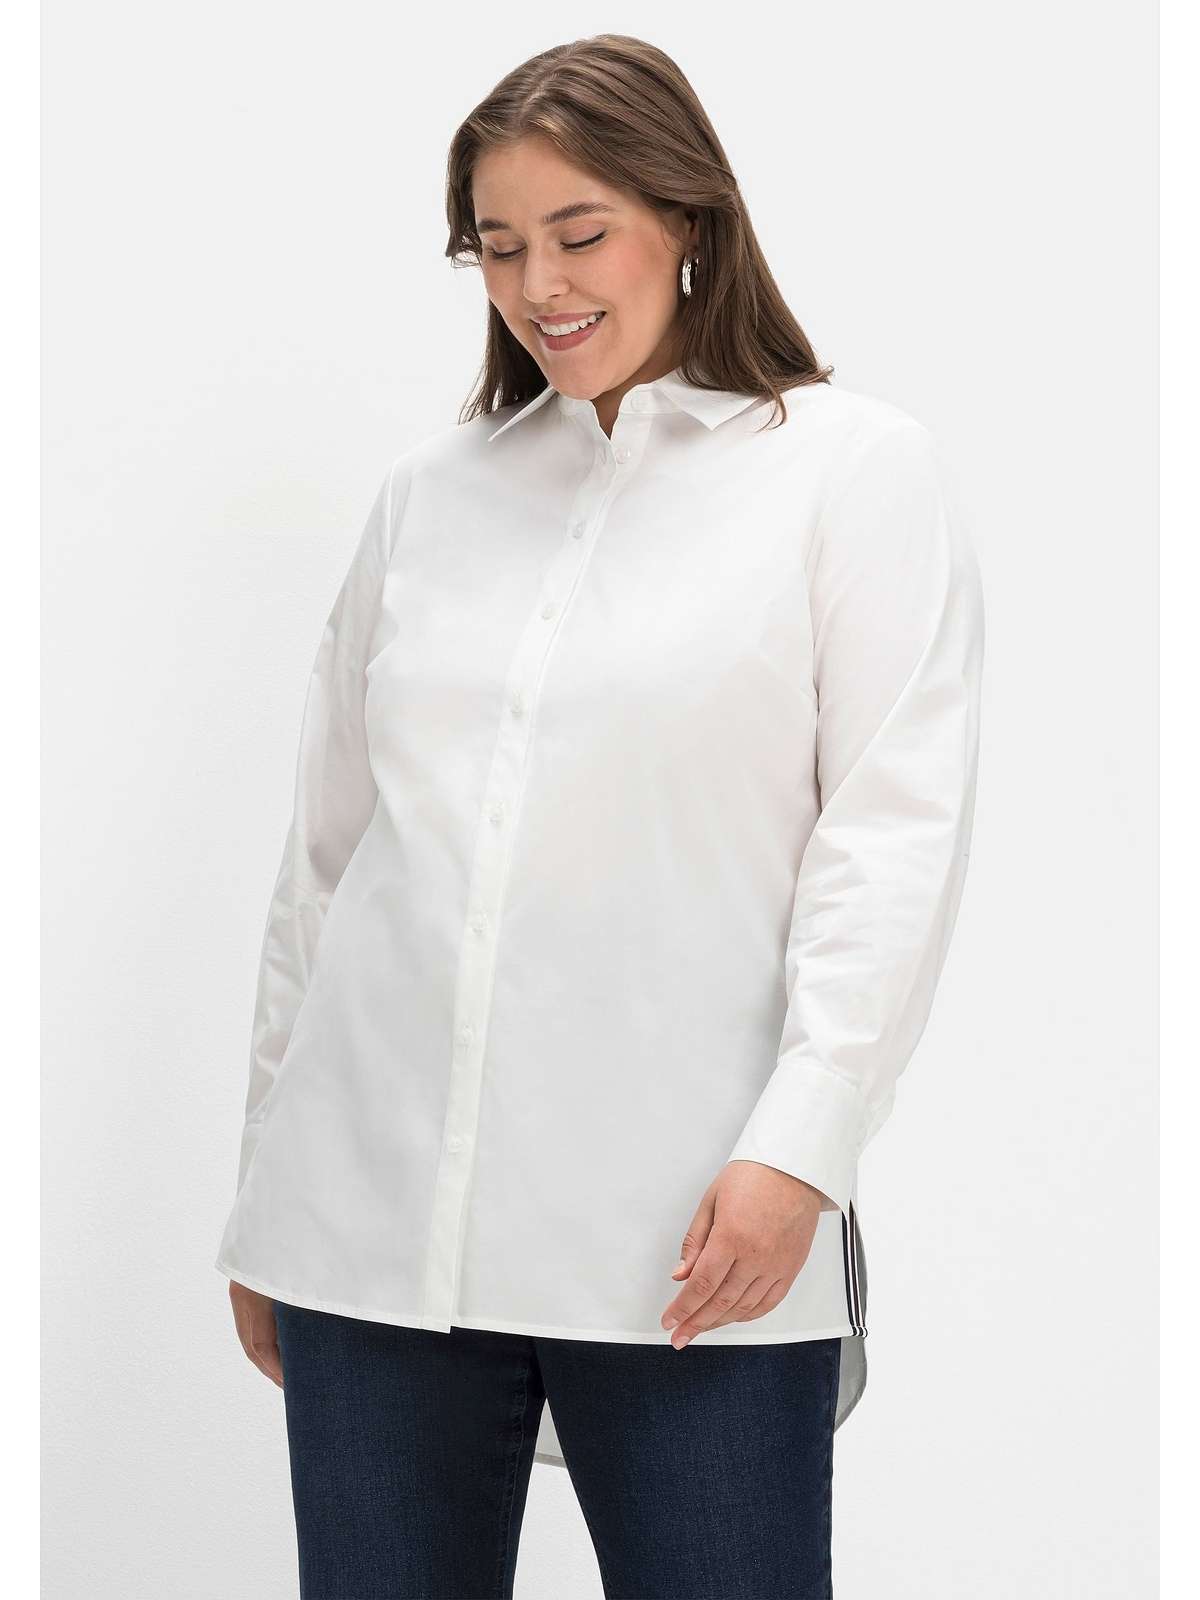 Блузка-рубашка с контрастными разрезами по бокам